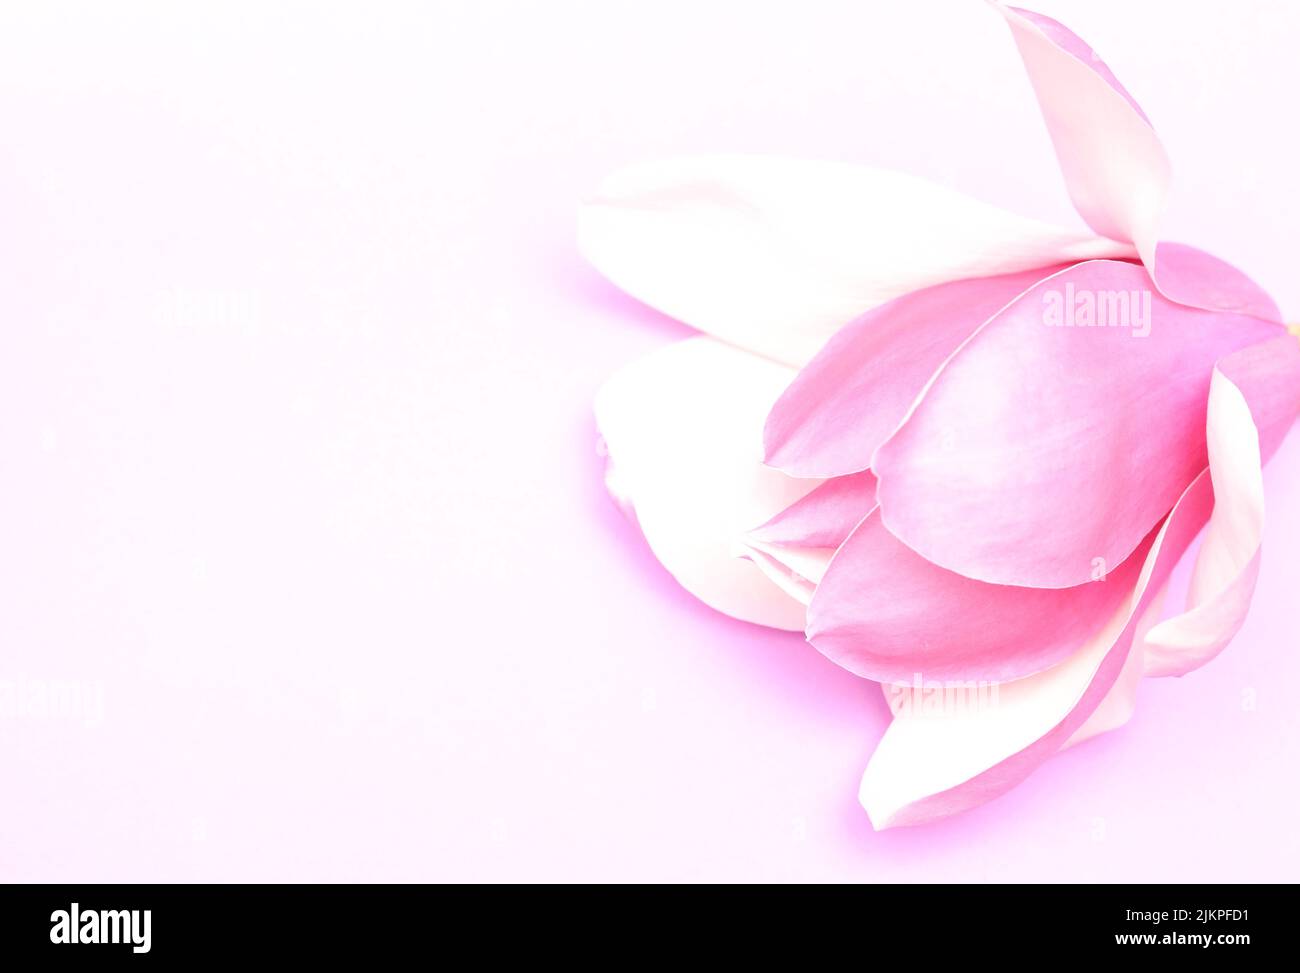 Deliberatamente sopra esposto, soffiato rosa prudente magnolia fiore e petali su uno sfondo chiaro chiaro pallido. Immagine monocromatica di stile illustrativo Foto Stock